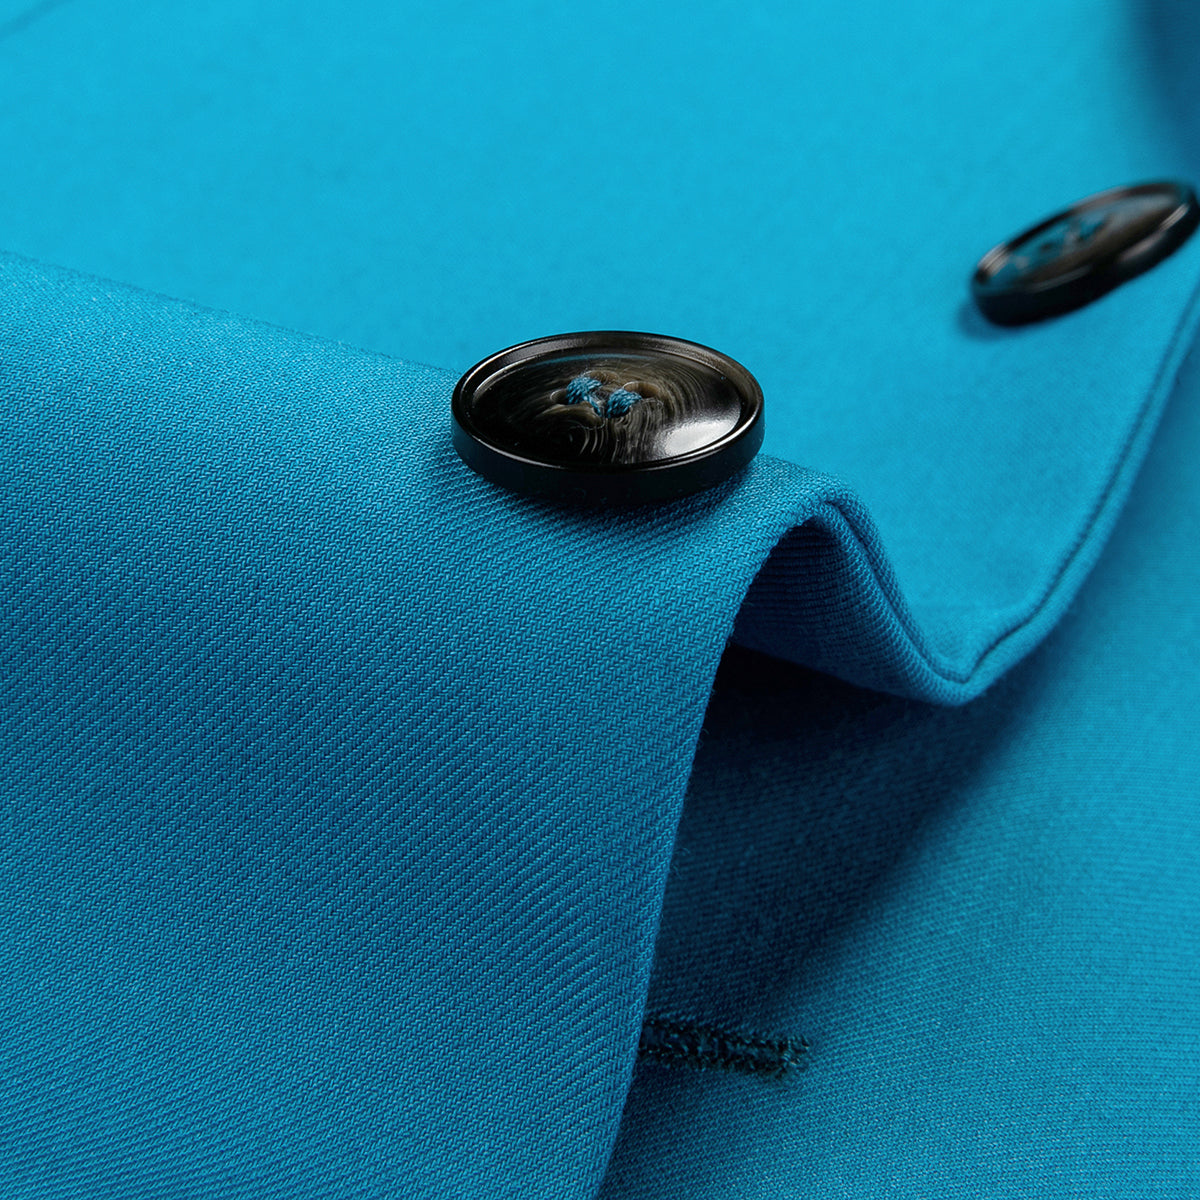 Men's Two-Button Back Slit Lapel Collar 3-Piece Suit Sea Blue